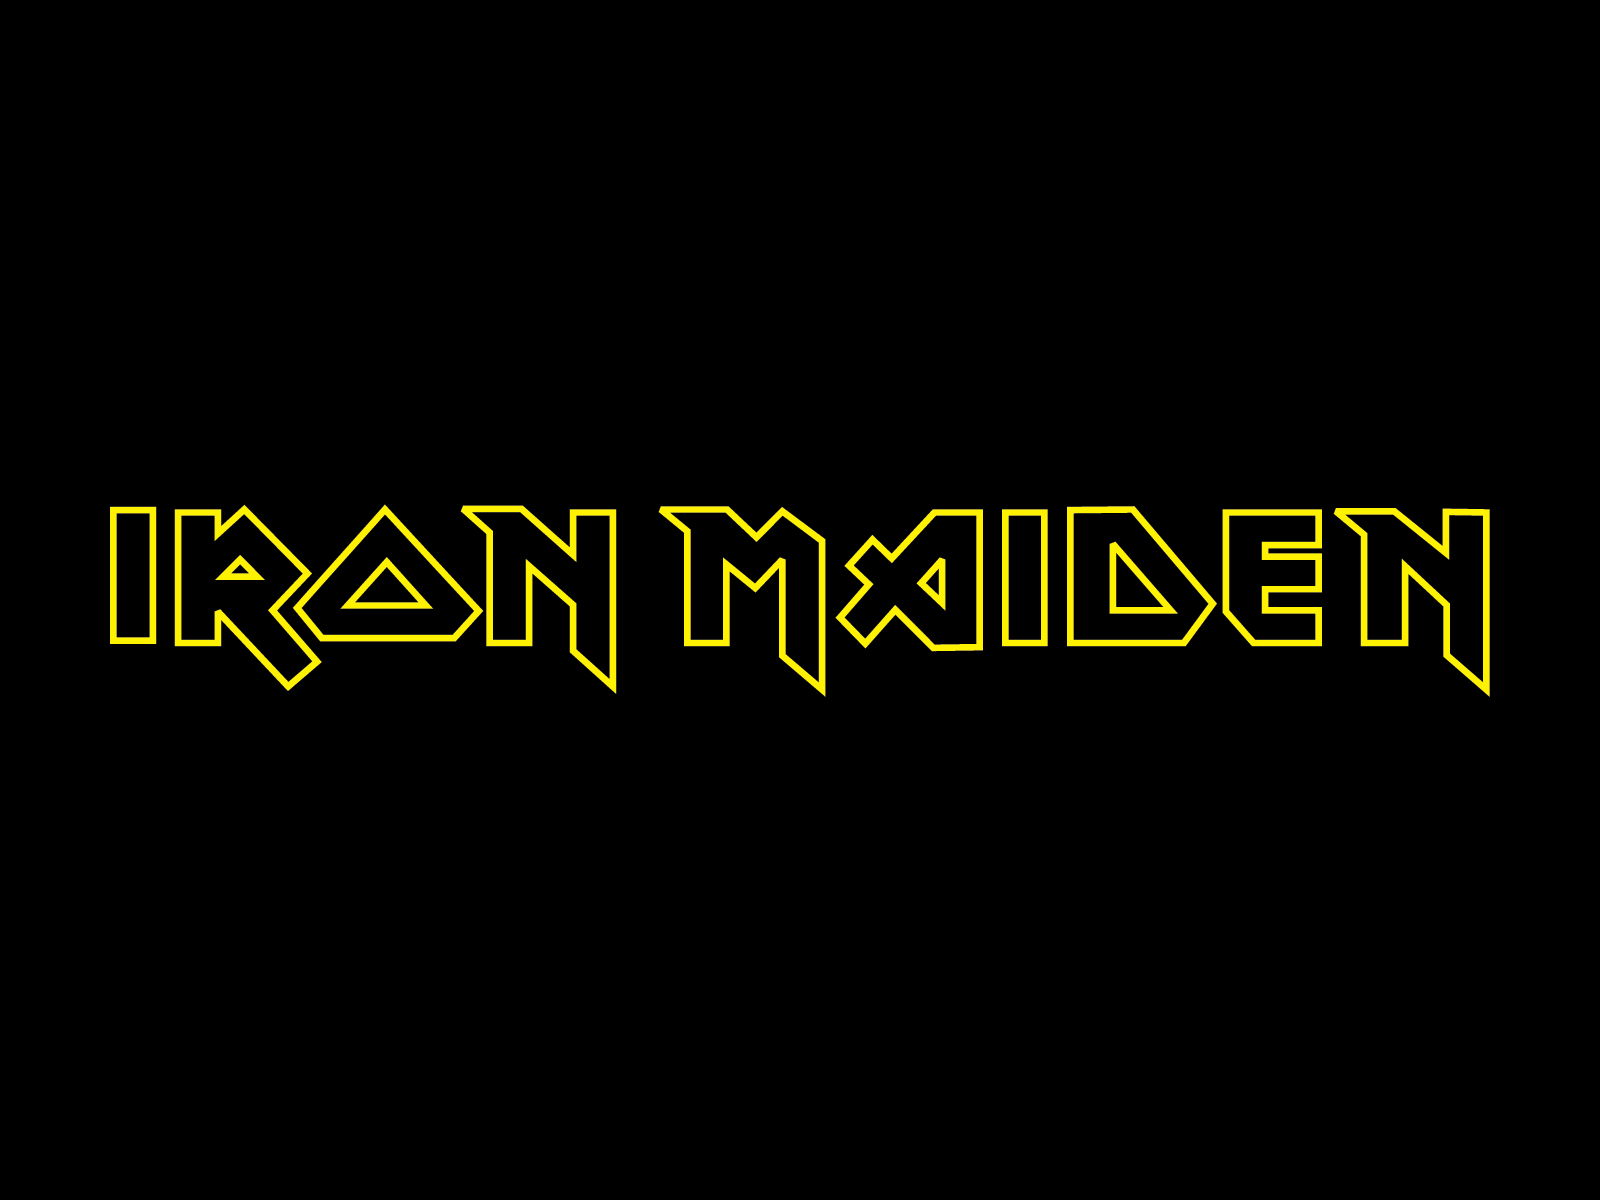 Iron Maiden Band Logo Wallpaper Logos Rock Metal